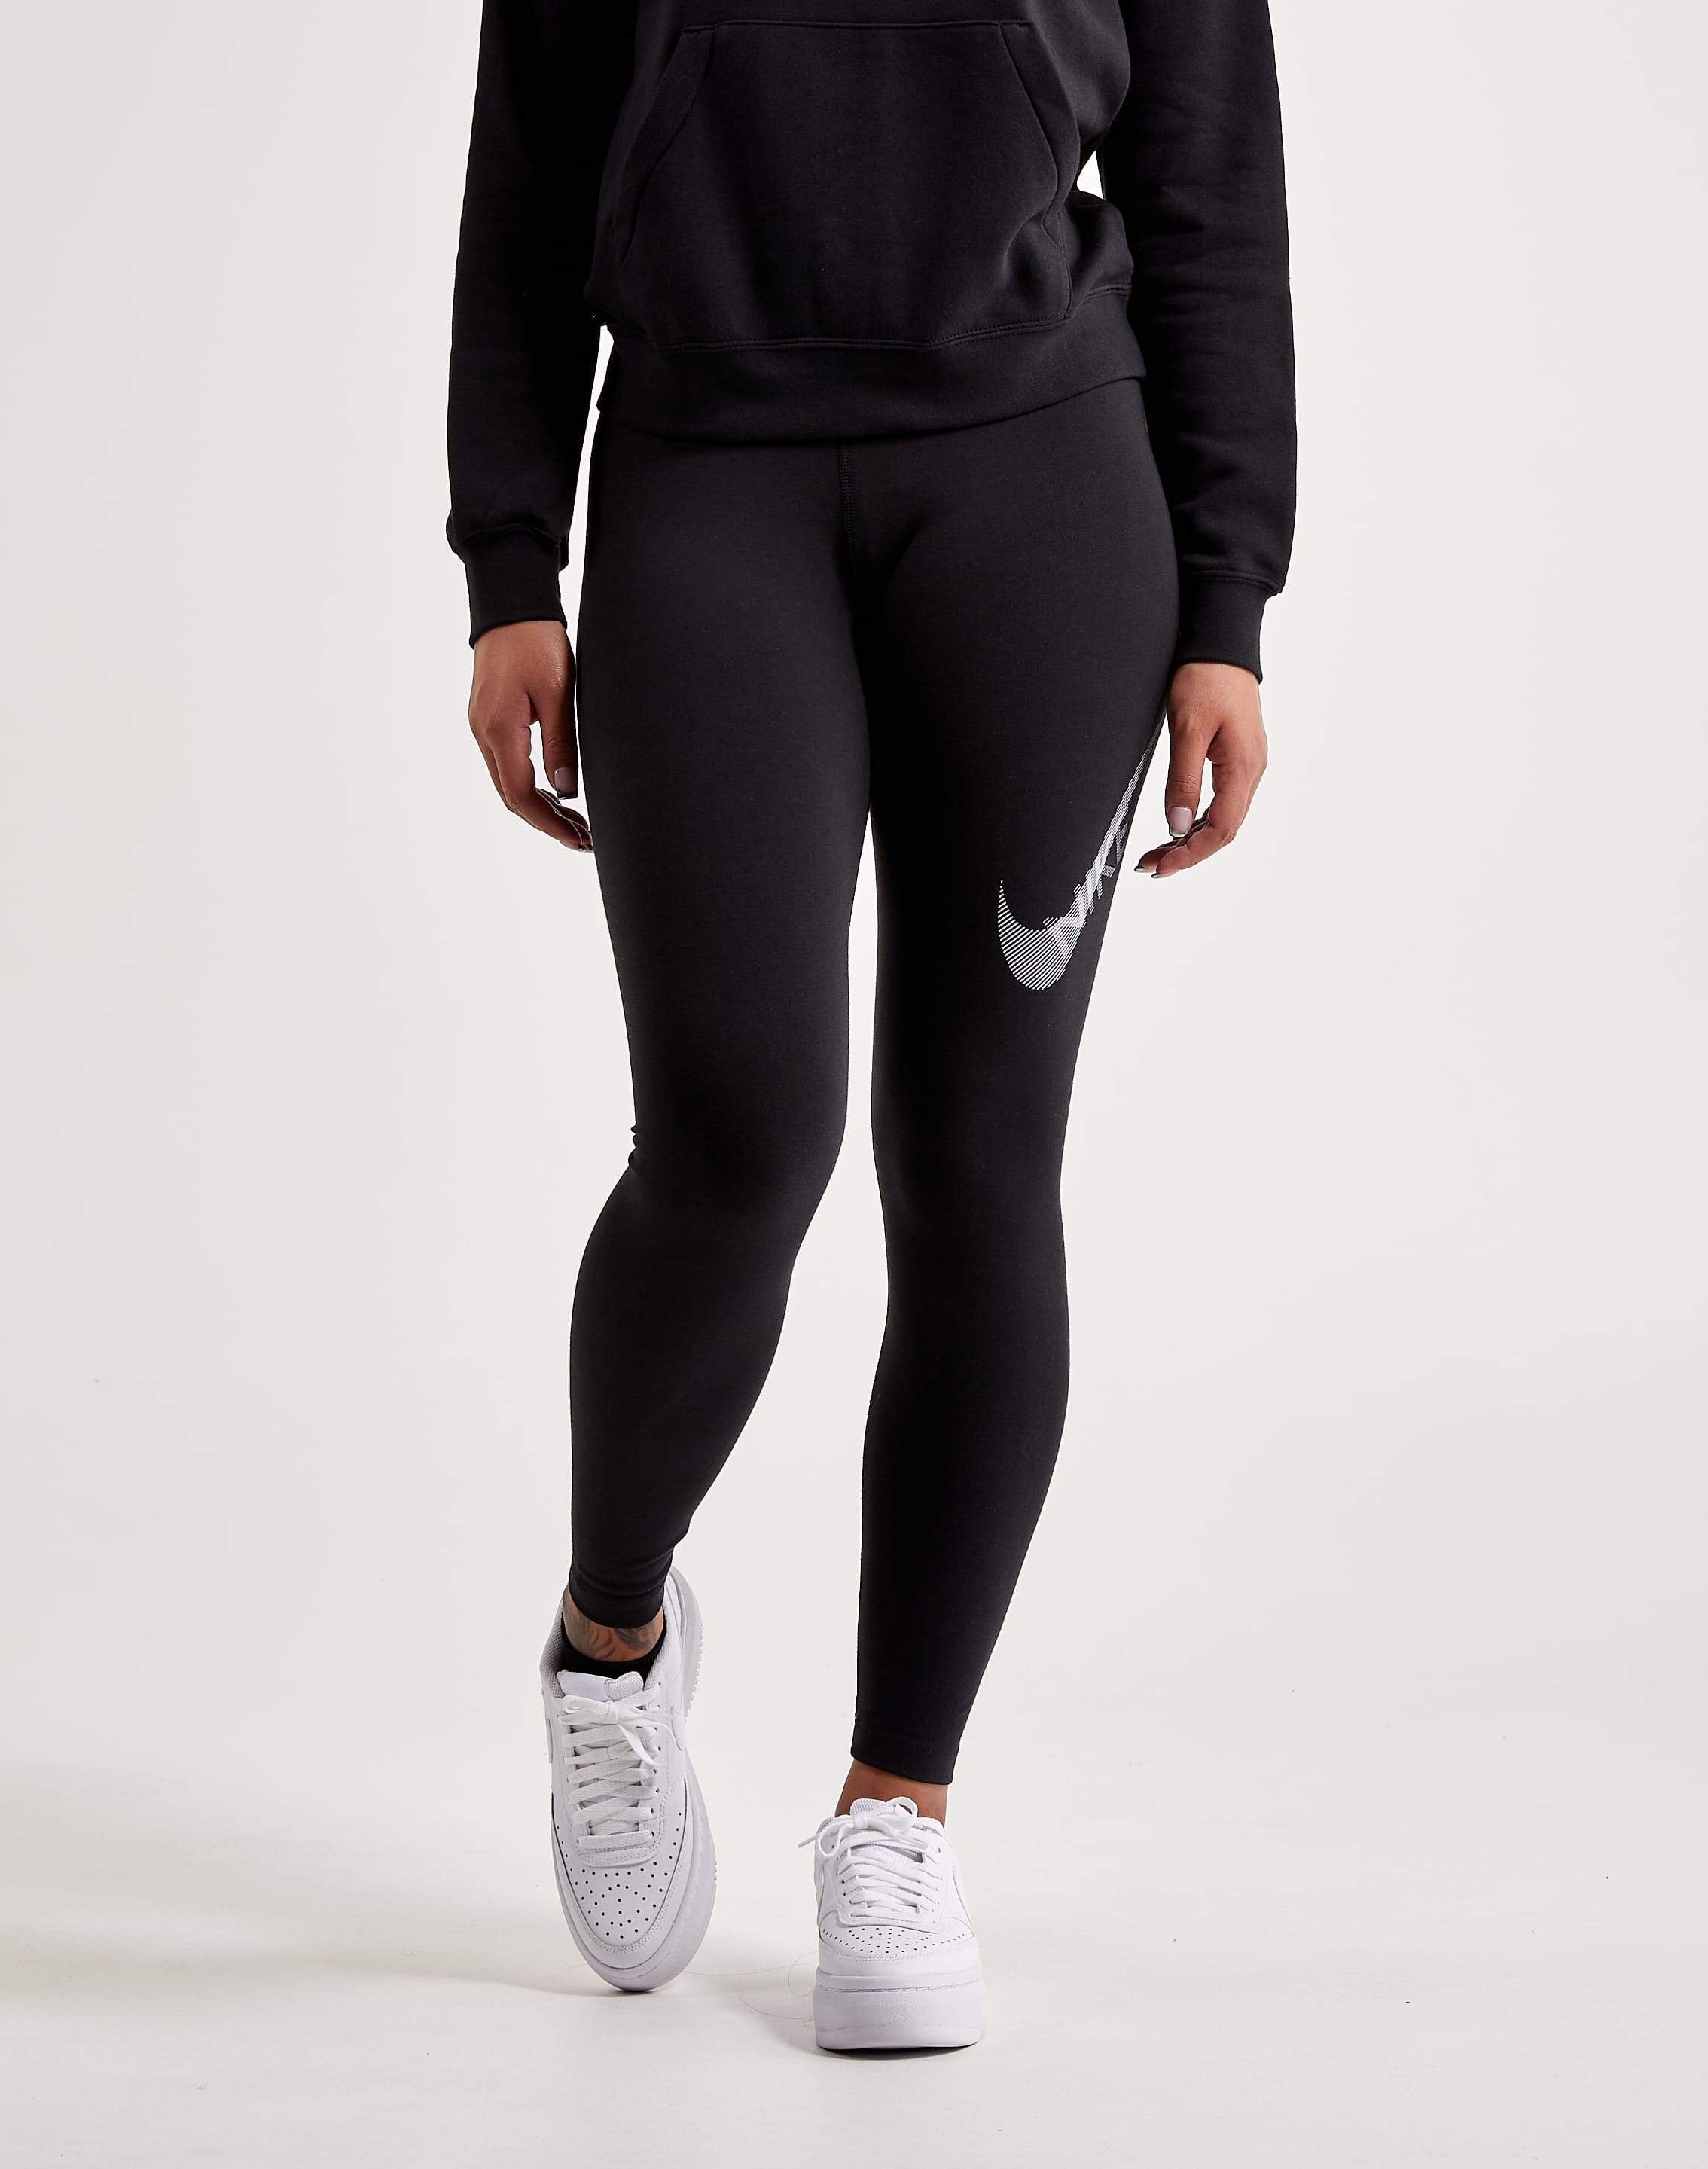 udbrud TRUE Roux Nike Swoosh High-Waisted Leggings – DTLR